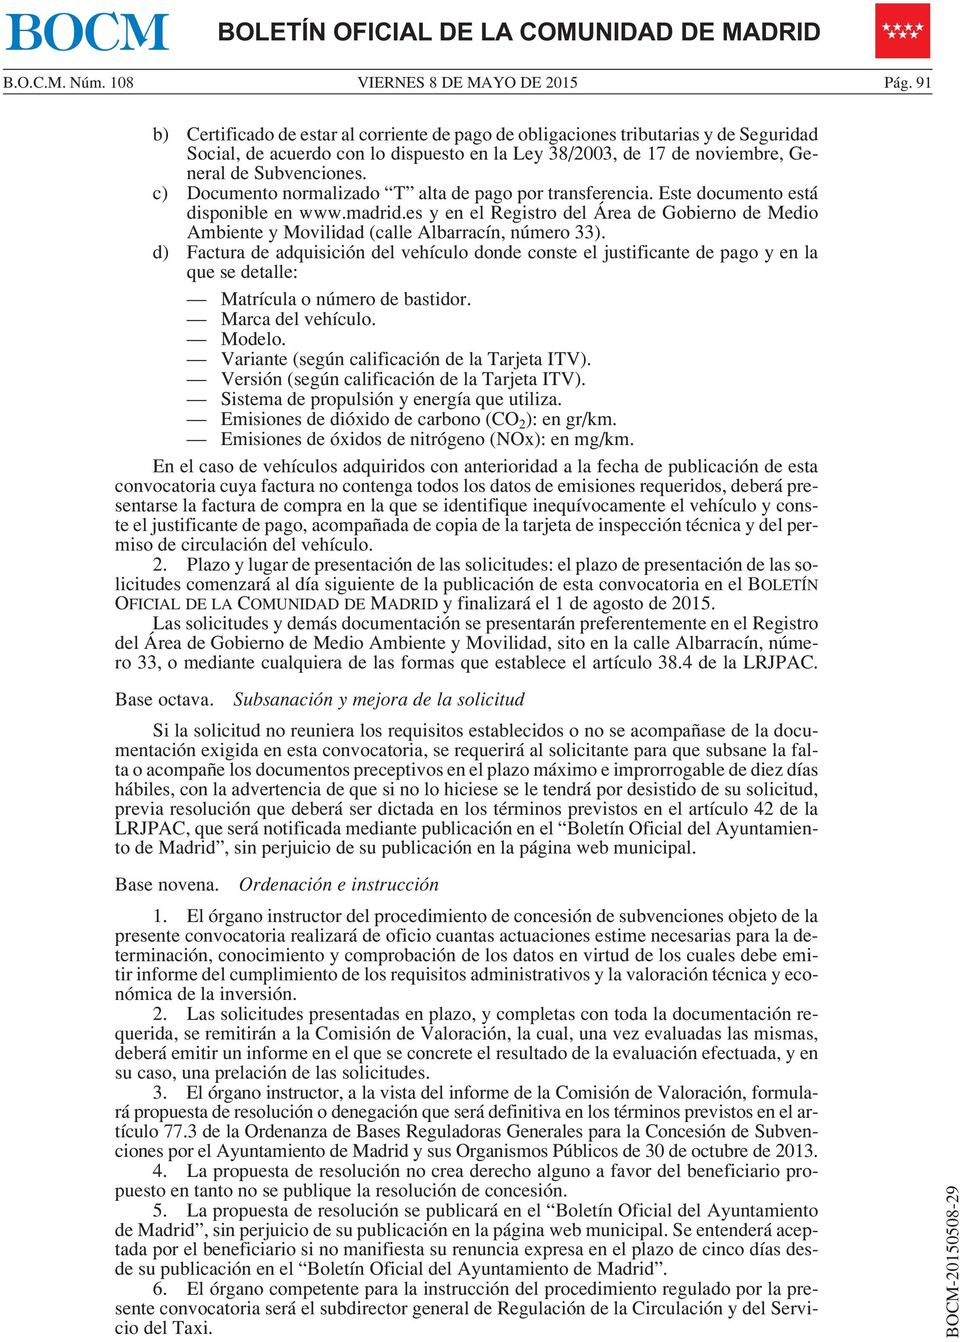 c) Documento normalizado T alta de pago por transferencia. Este documento está disponible en www.madrid.